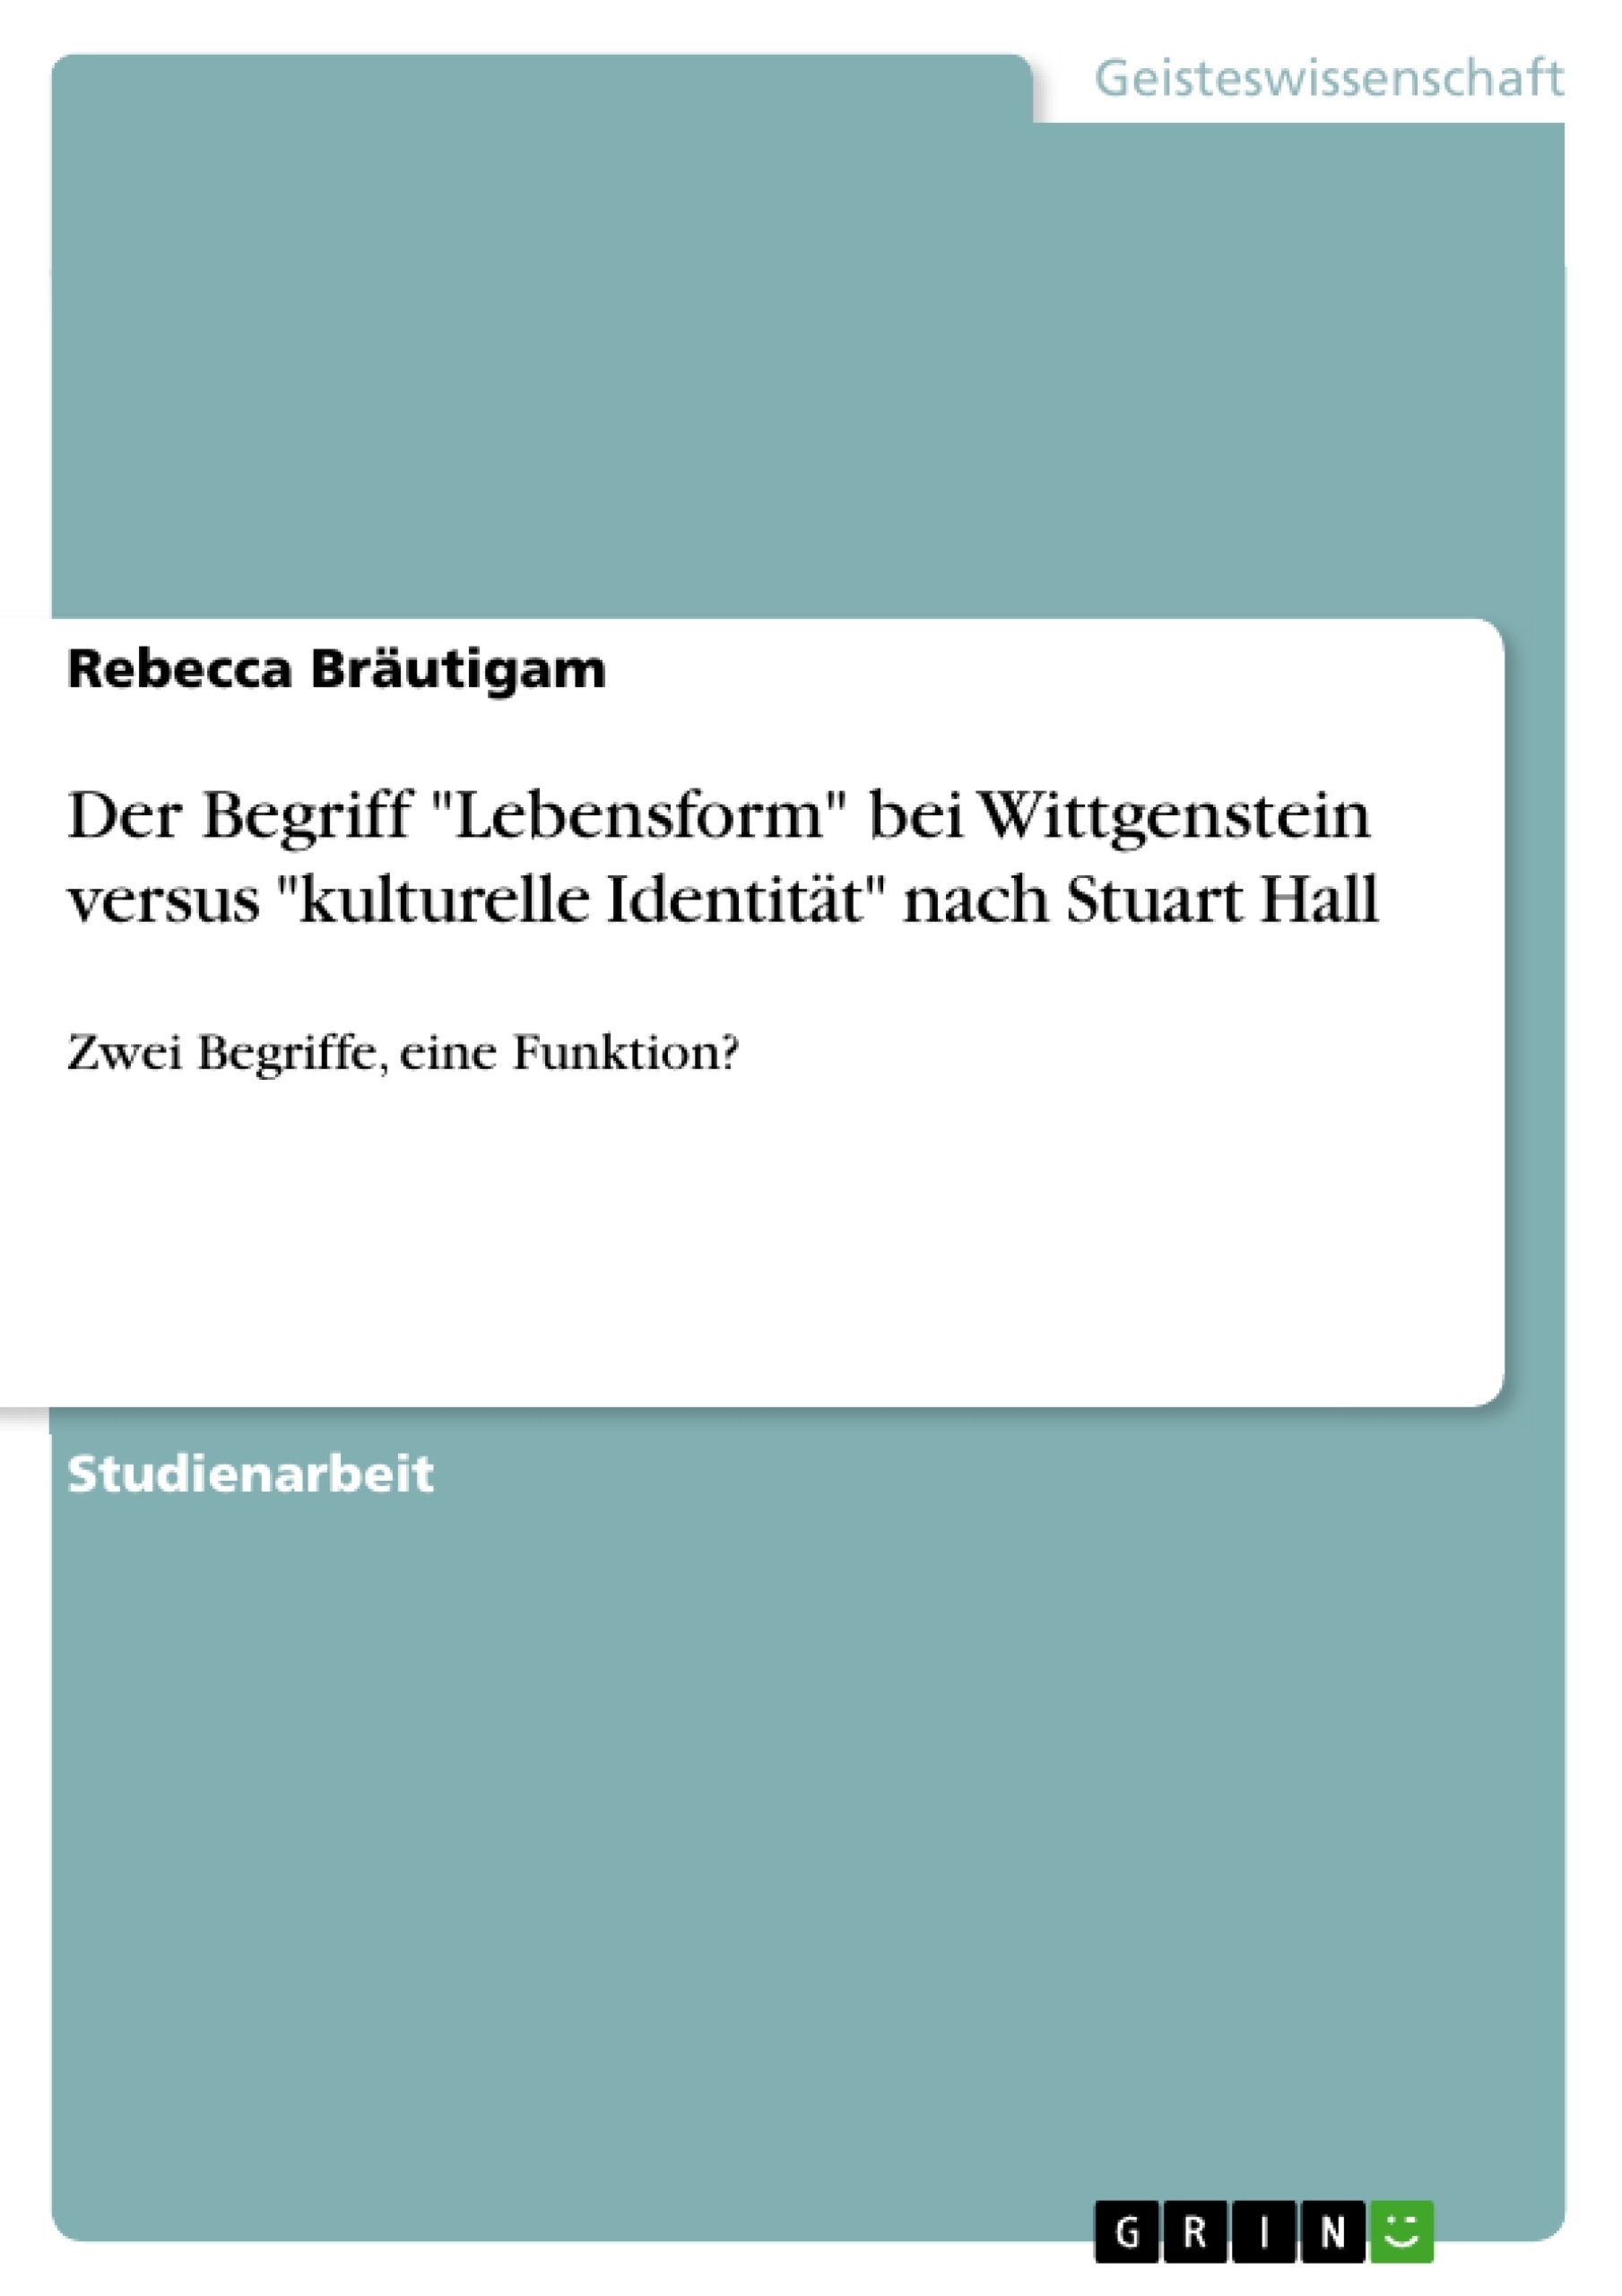 Título: Der Begriff "Lebensform" bei Wittgenstein versus "kulturelle Identität" nach Stuart Hall